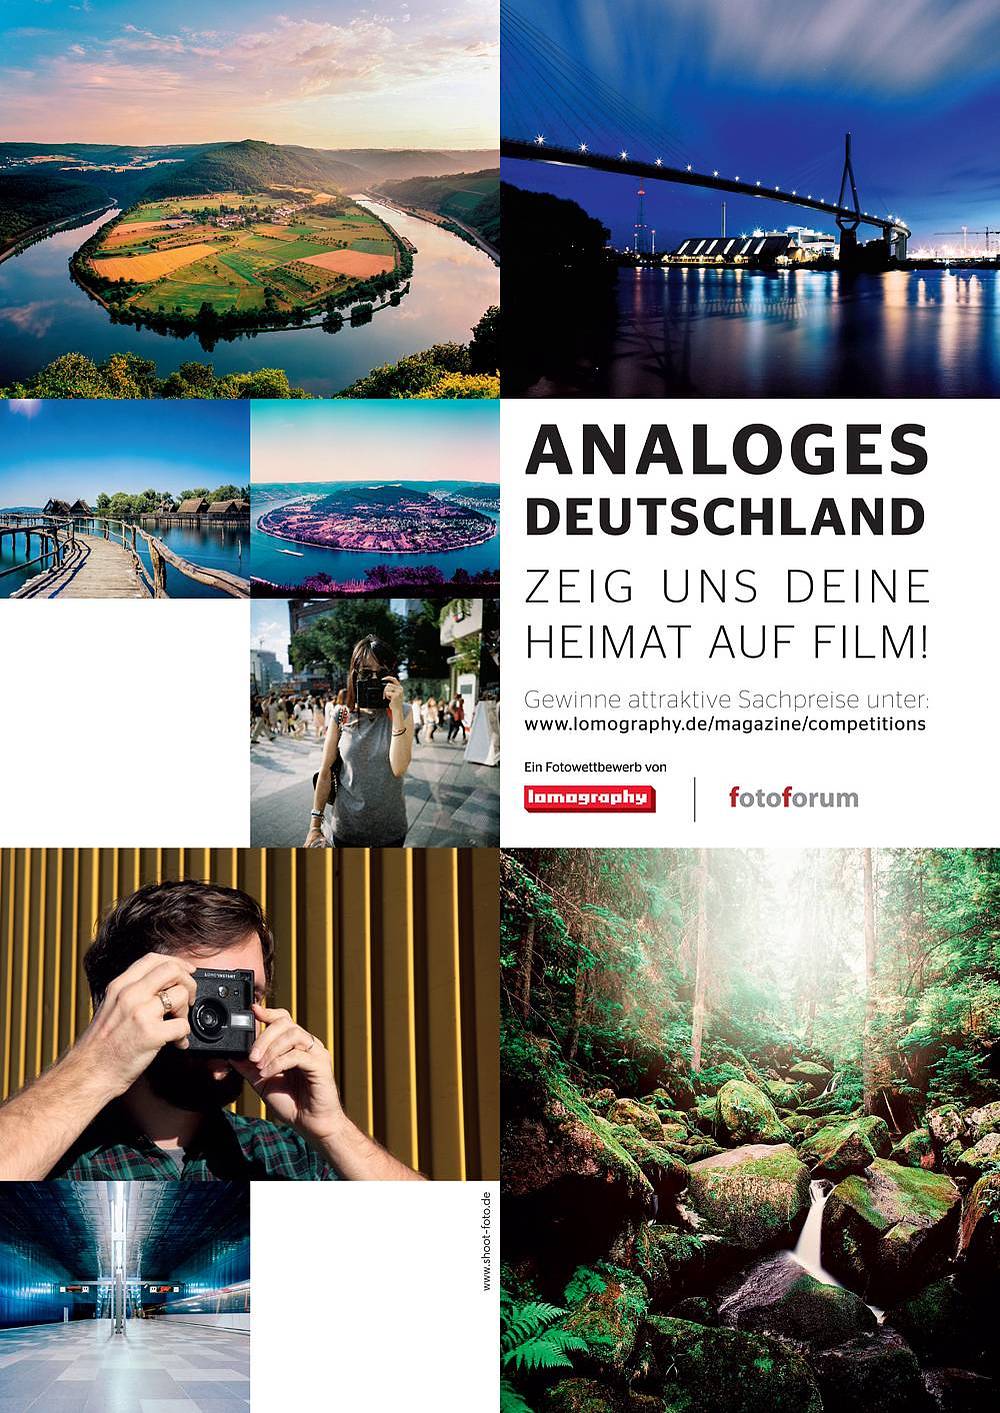 Analoges Deutschland - Zeig Fotoforum und Lomography deine Heimat auf Film!